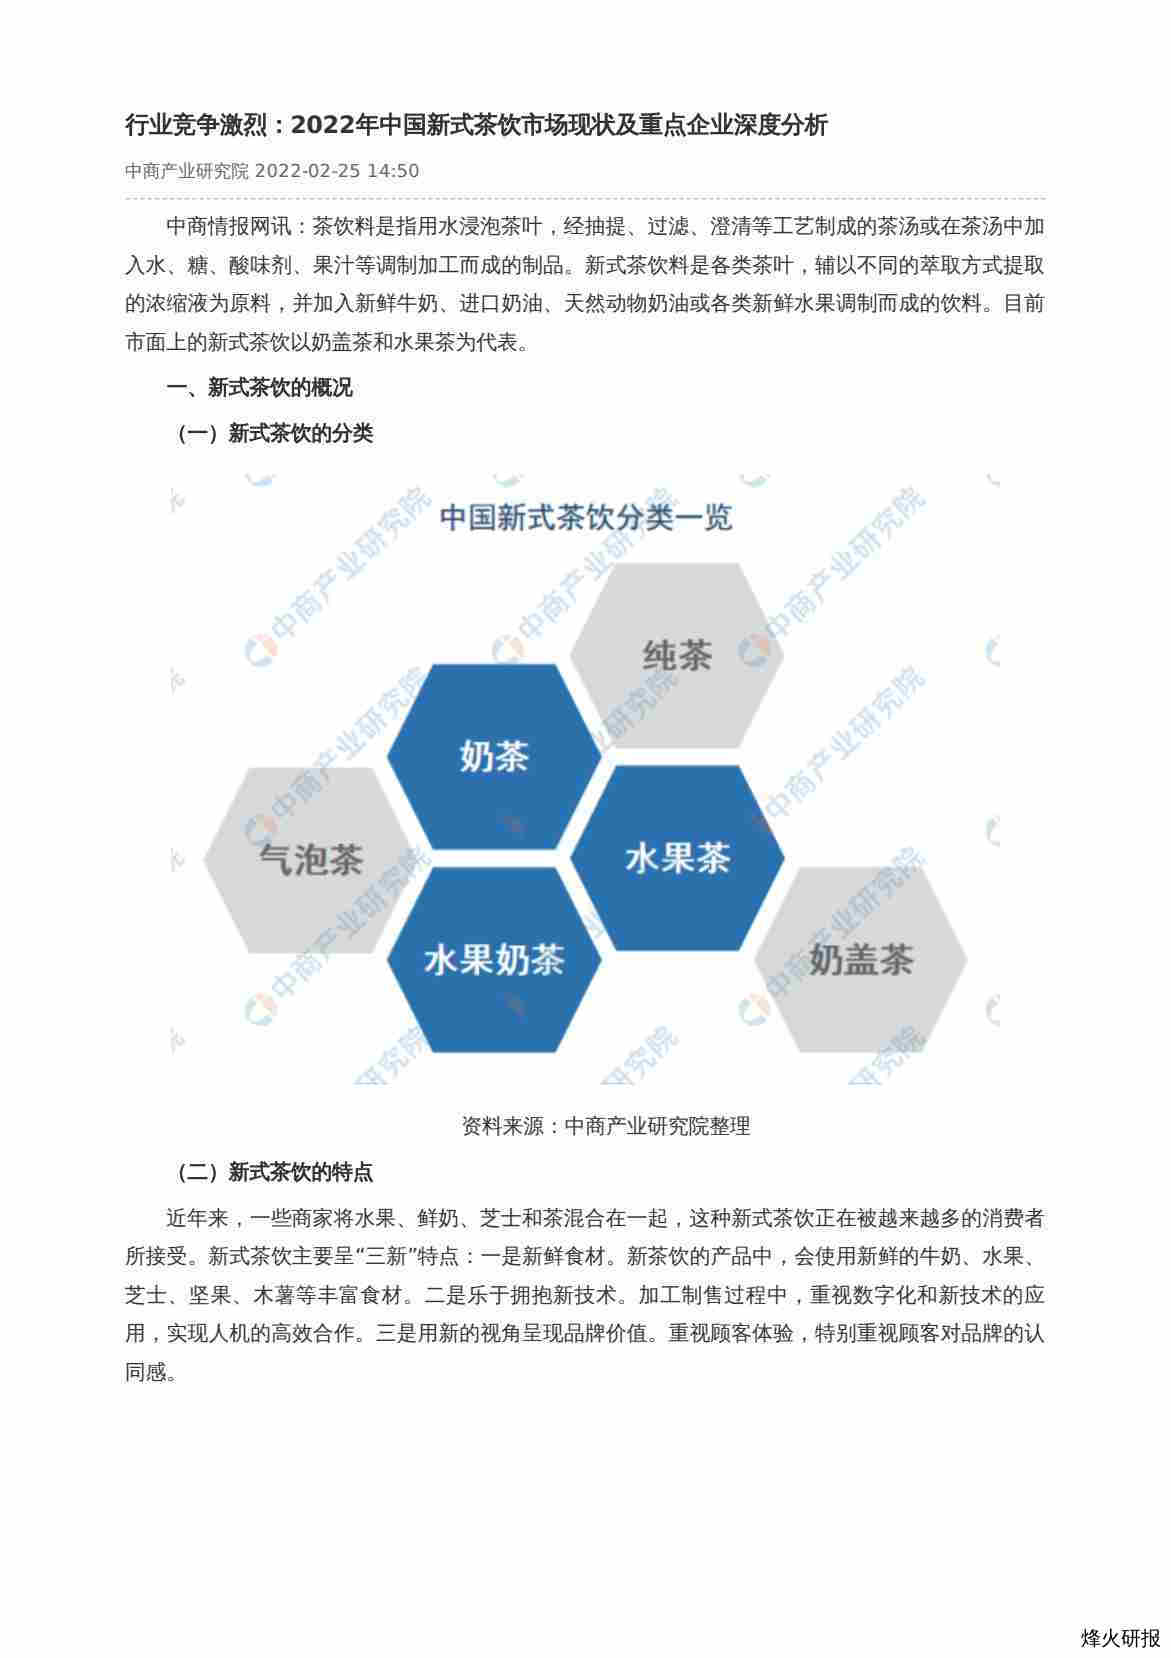 【中商产业研究院】行业竞争激烈：2022年中国新式茶饮市场现状及重点企业深度分析.pdf-第一页